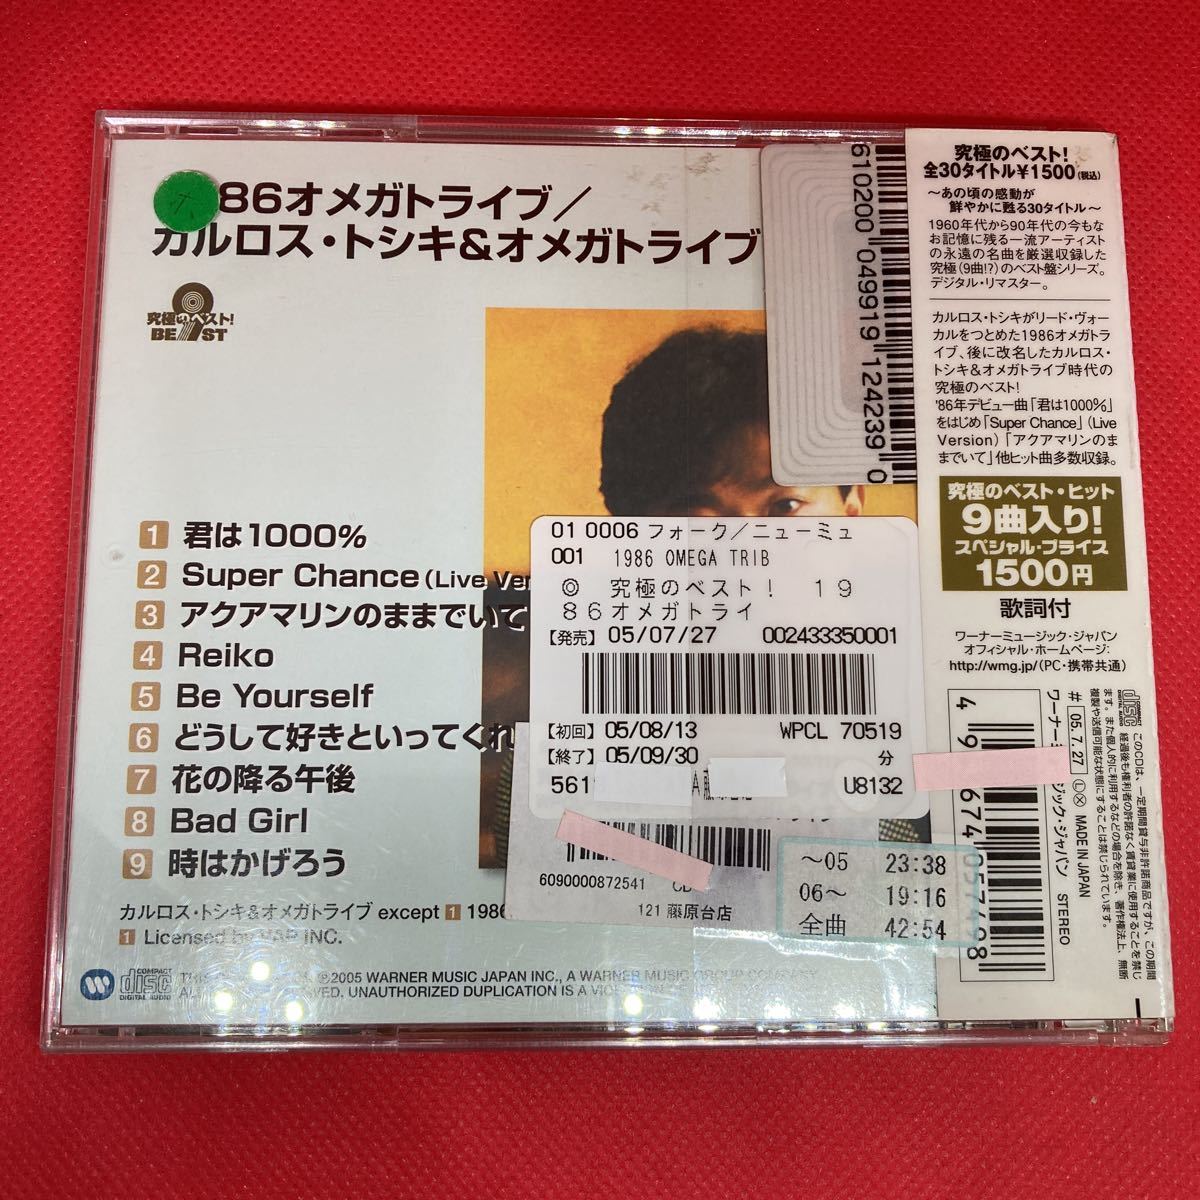 【ベスト盤】1986オメガトライブ/カルロス・トシキ&オメガトライブ 究極のベスト! / CD ベストアルバム_画像3